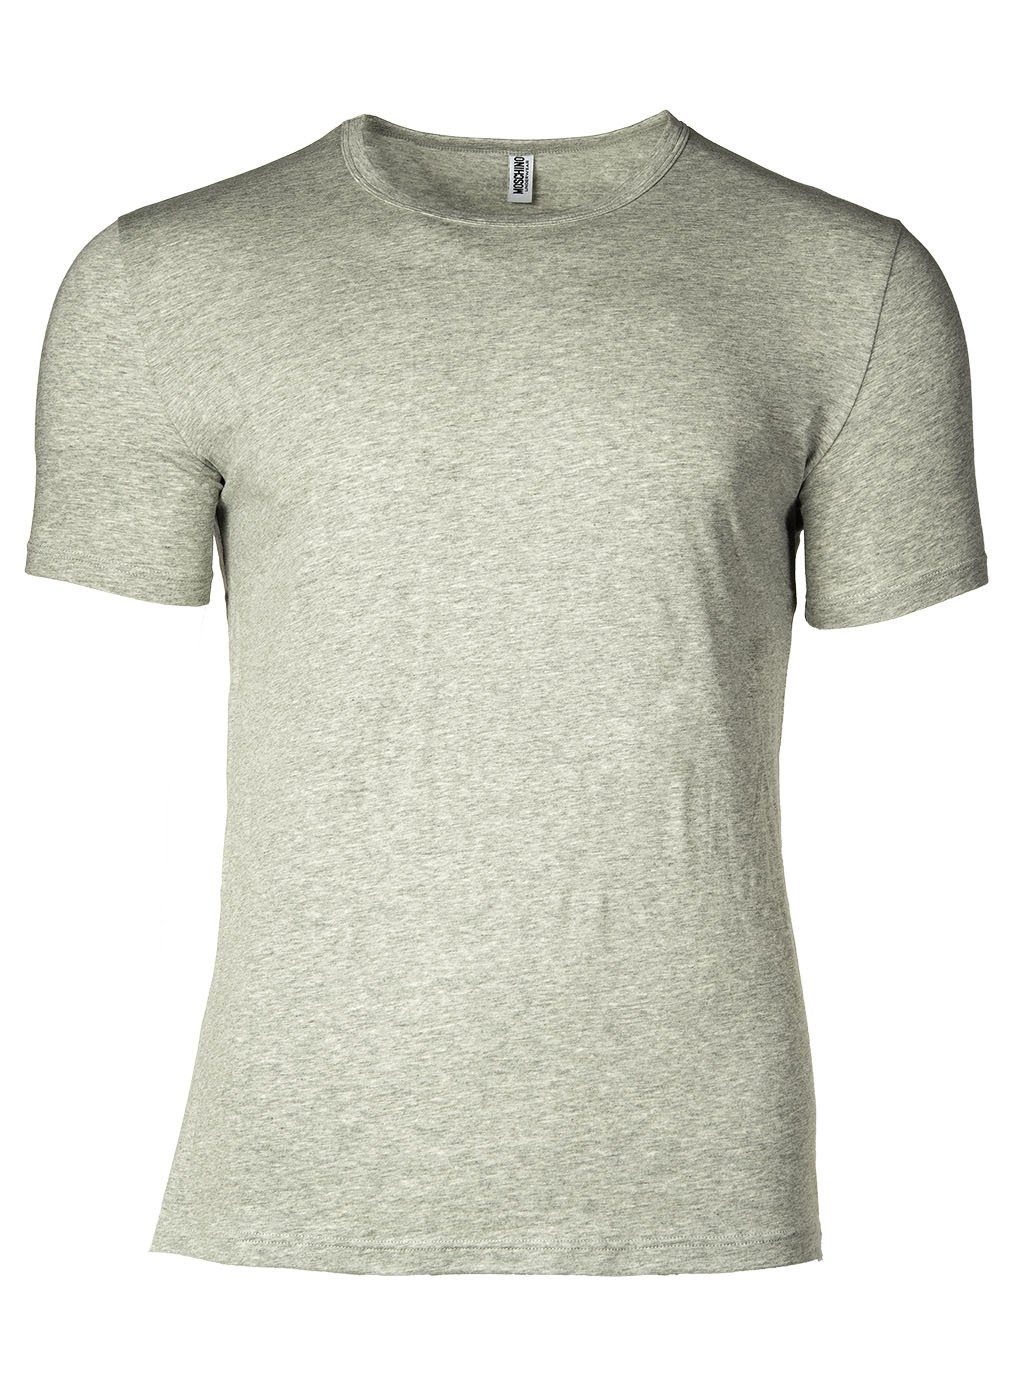 Schwarz/Grau T-Shirt Neck, - Herren 2er Crew Moschino Rundhals T-Shirt Pack